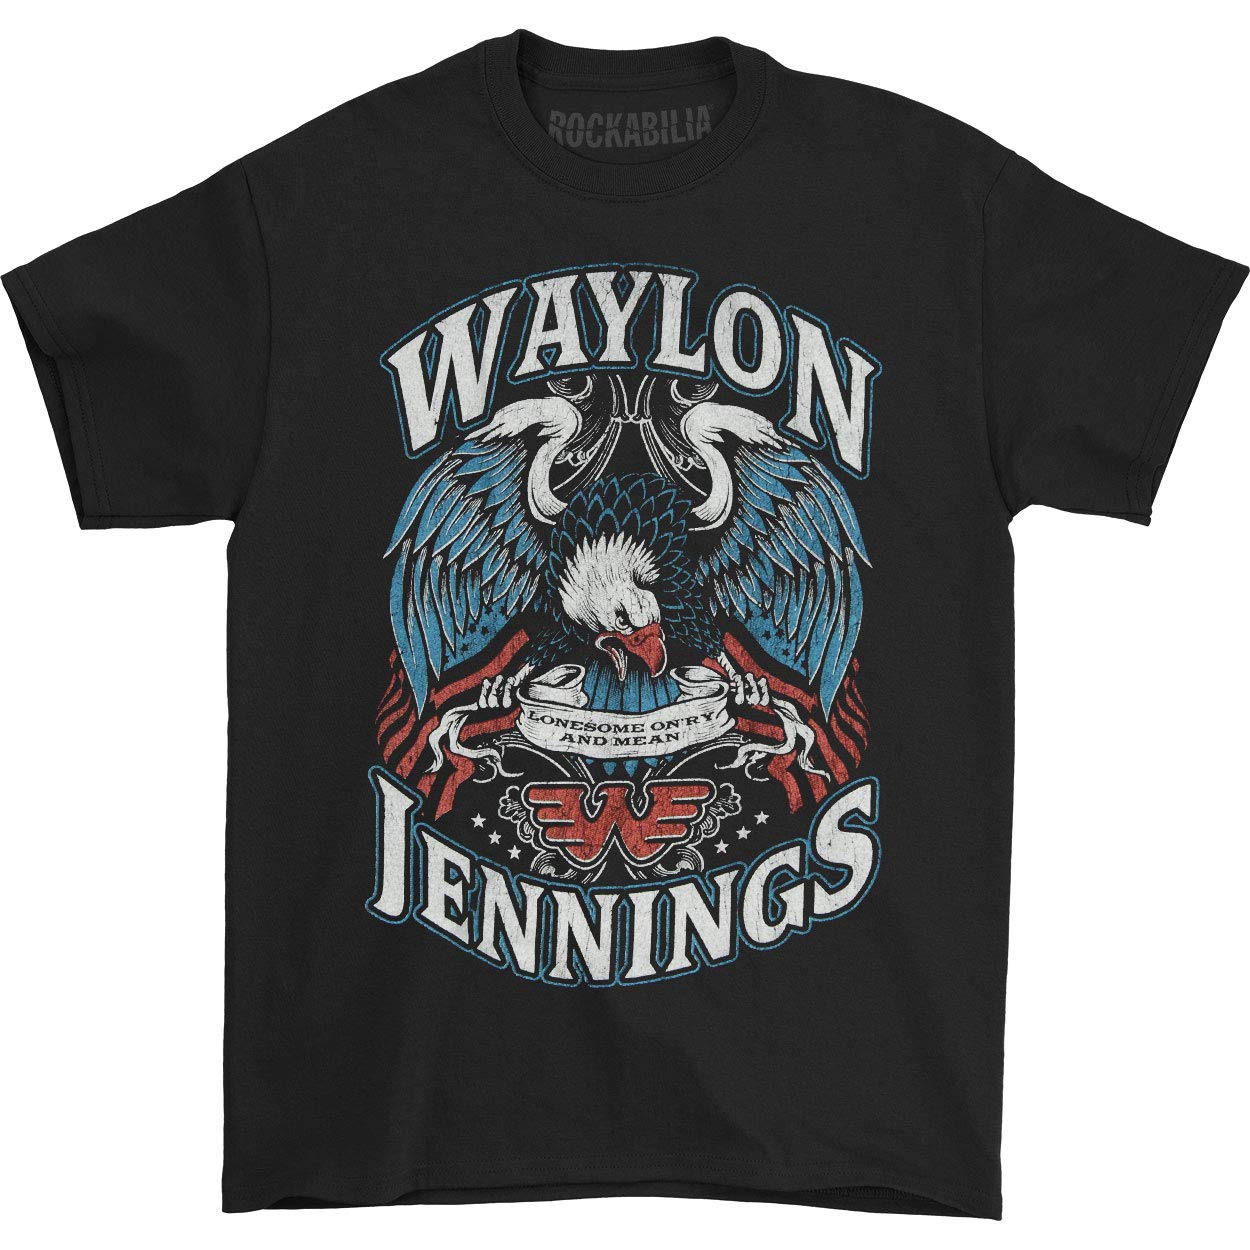 band t shirts - Waylon Jennings Lonesome T-Shirt